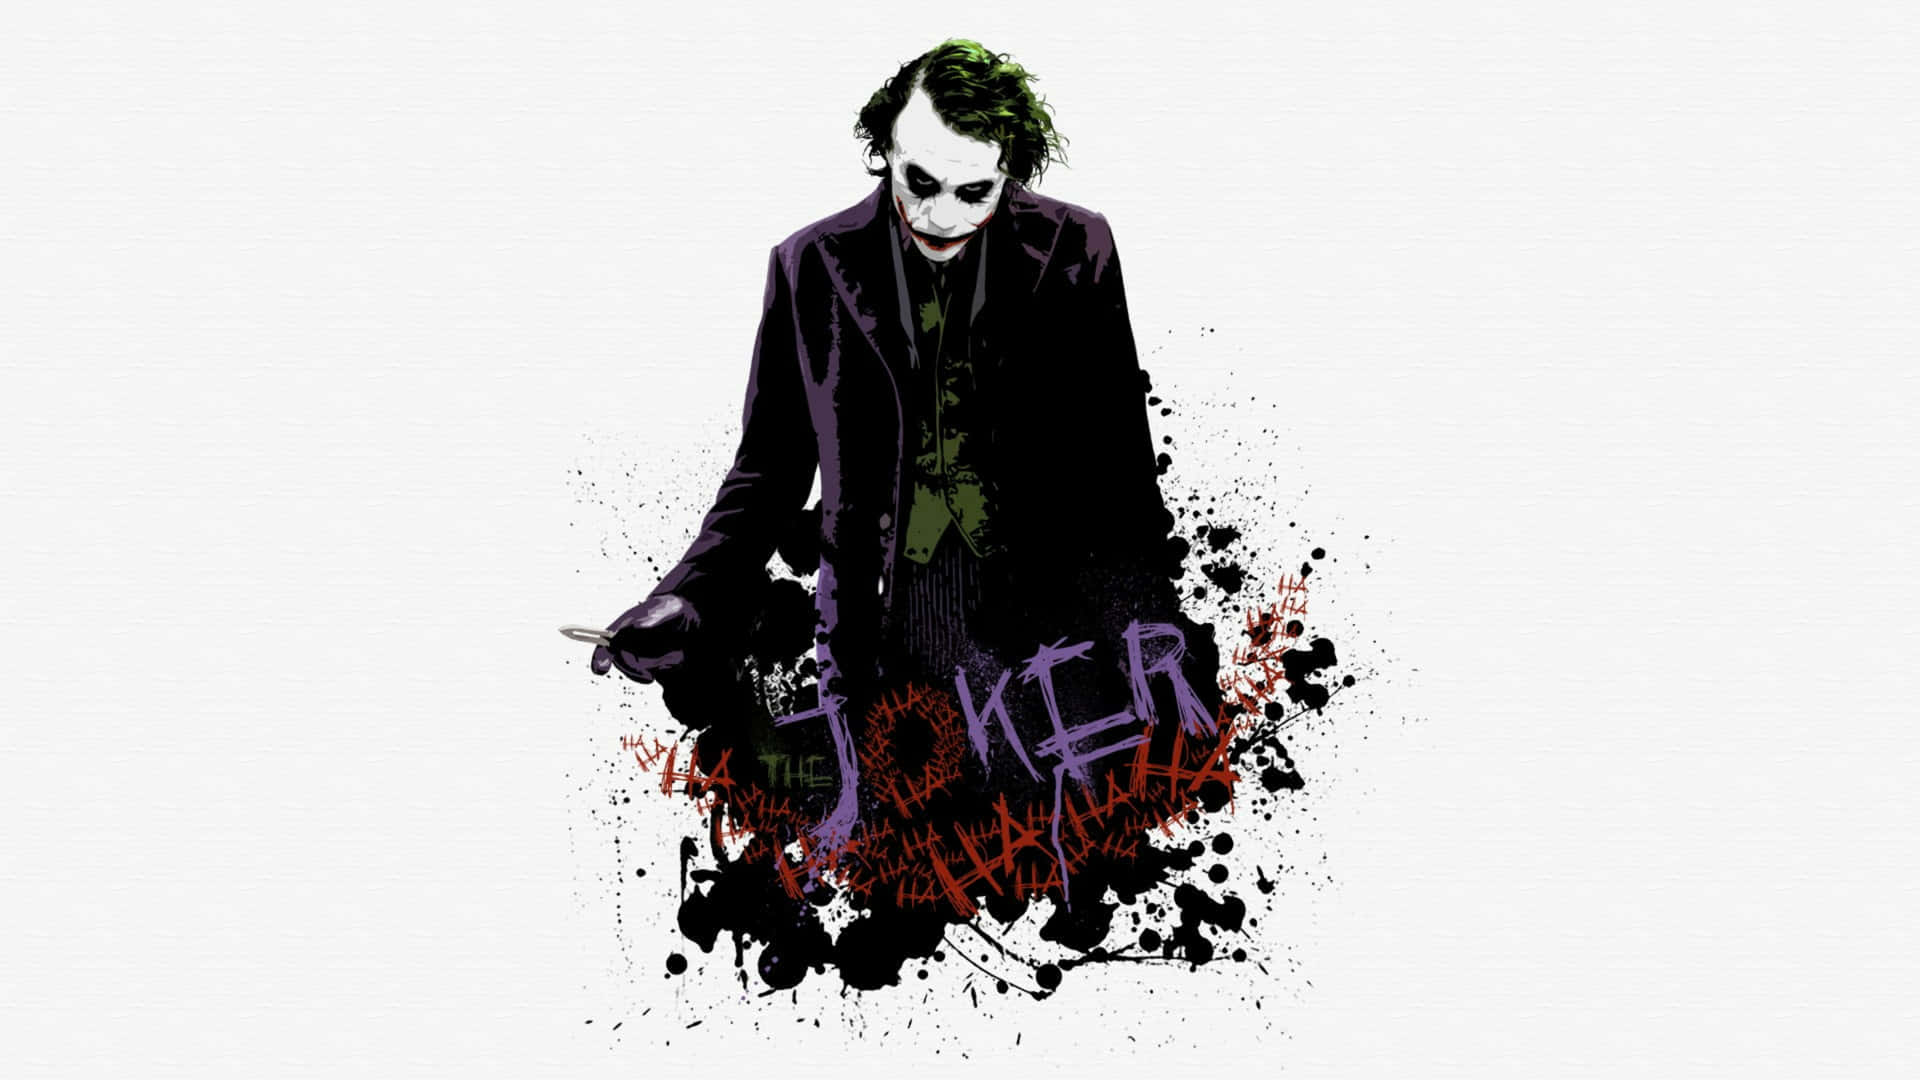 Free Dark Knight Joker In 4k Ultra Hd Wallpaper Downloads, [100+] Dark  Knight Joker In 4k Ultra Hd Wallpapers for FREE 